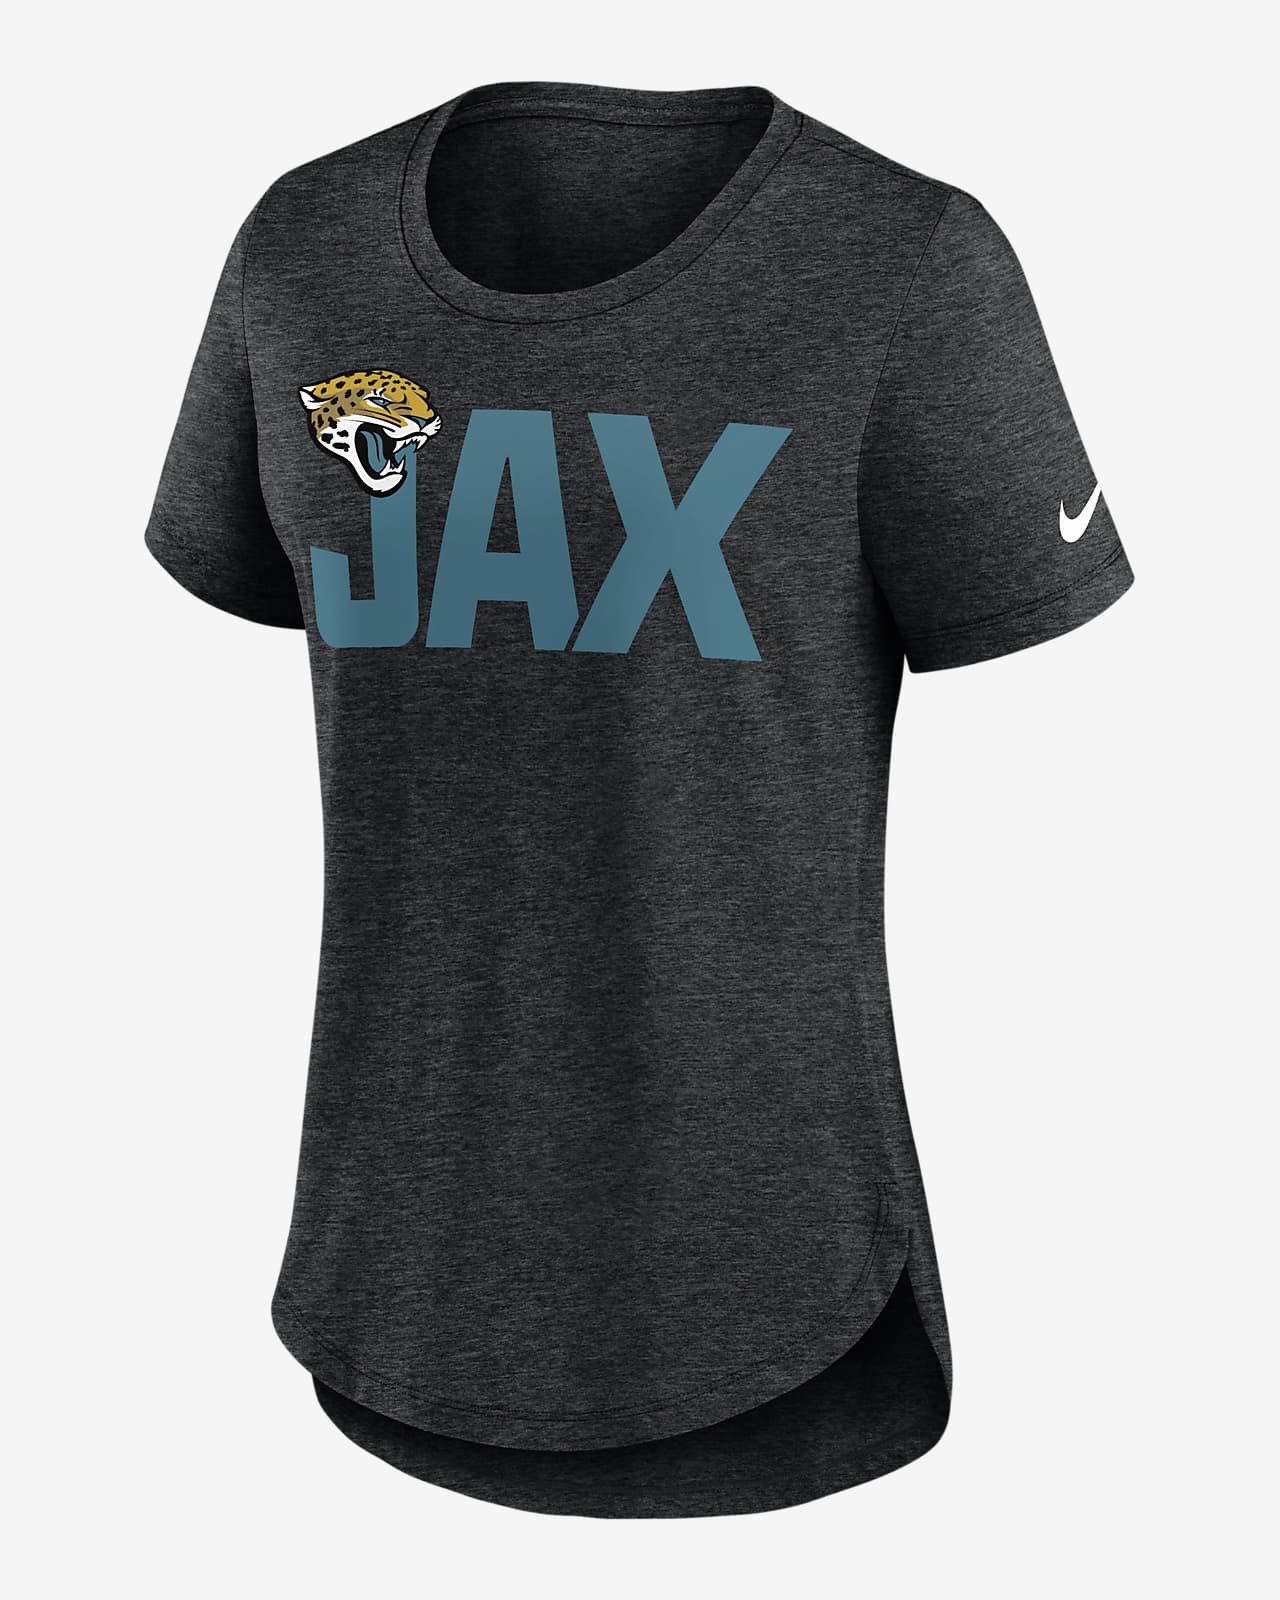 Jacksonville T-shirt